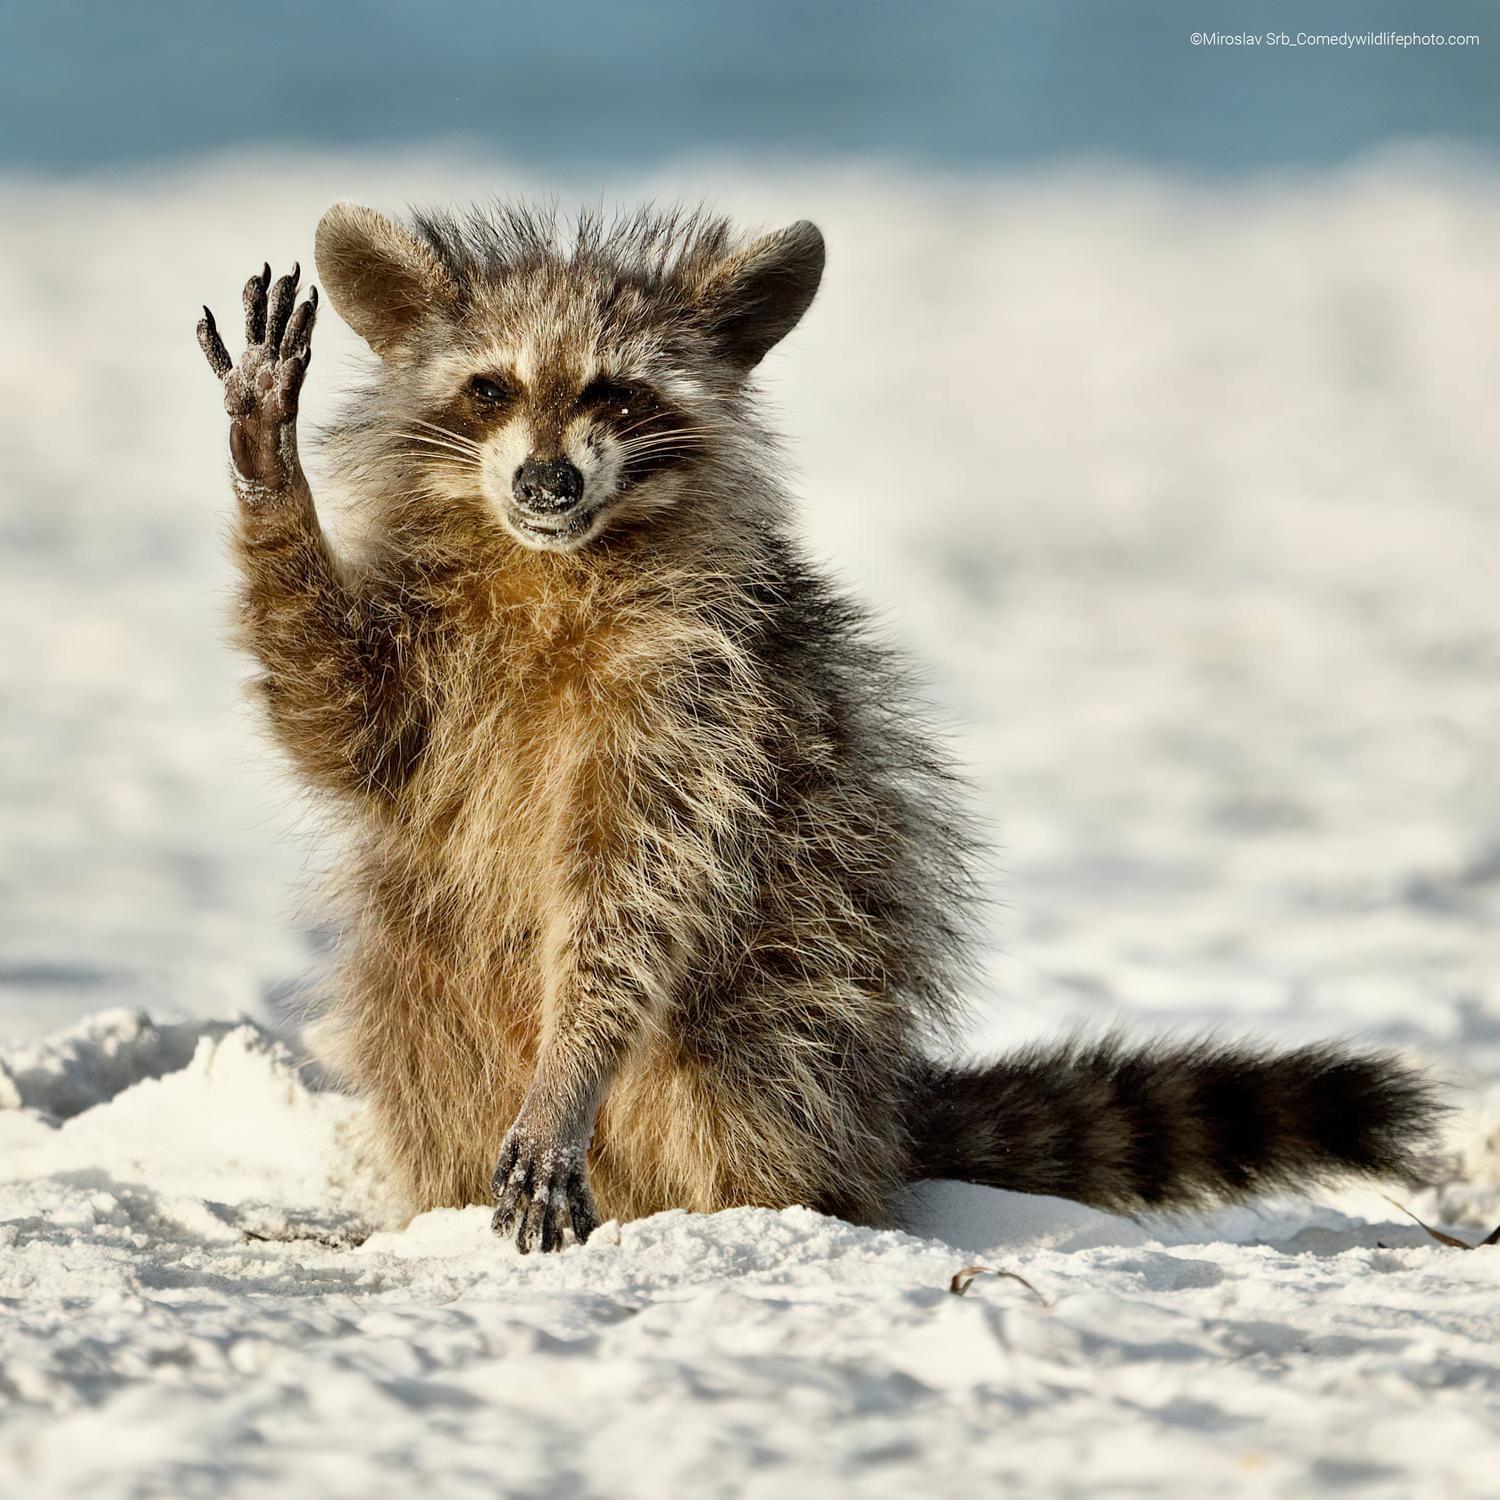 Η άγρια φύση πρωταγωνιστεί... σε κωμωδία - Στιγμές γέλιου στις φωτογραφίες του Comedy Wildlife Photo Awards